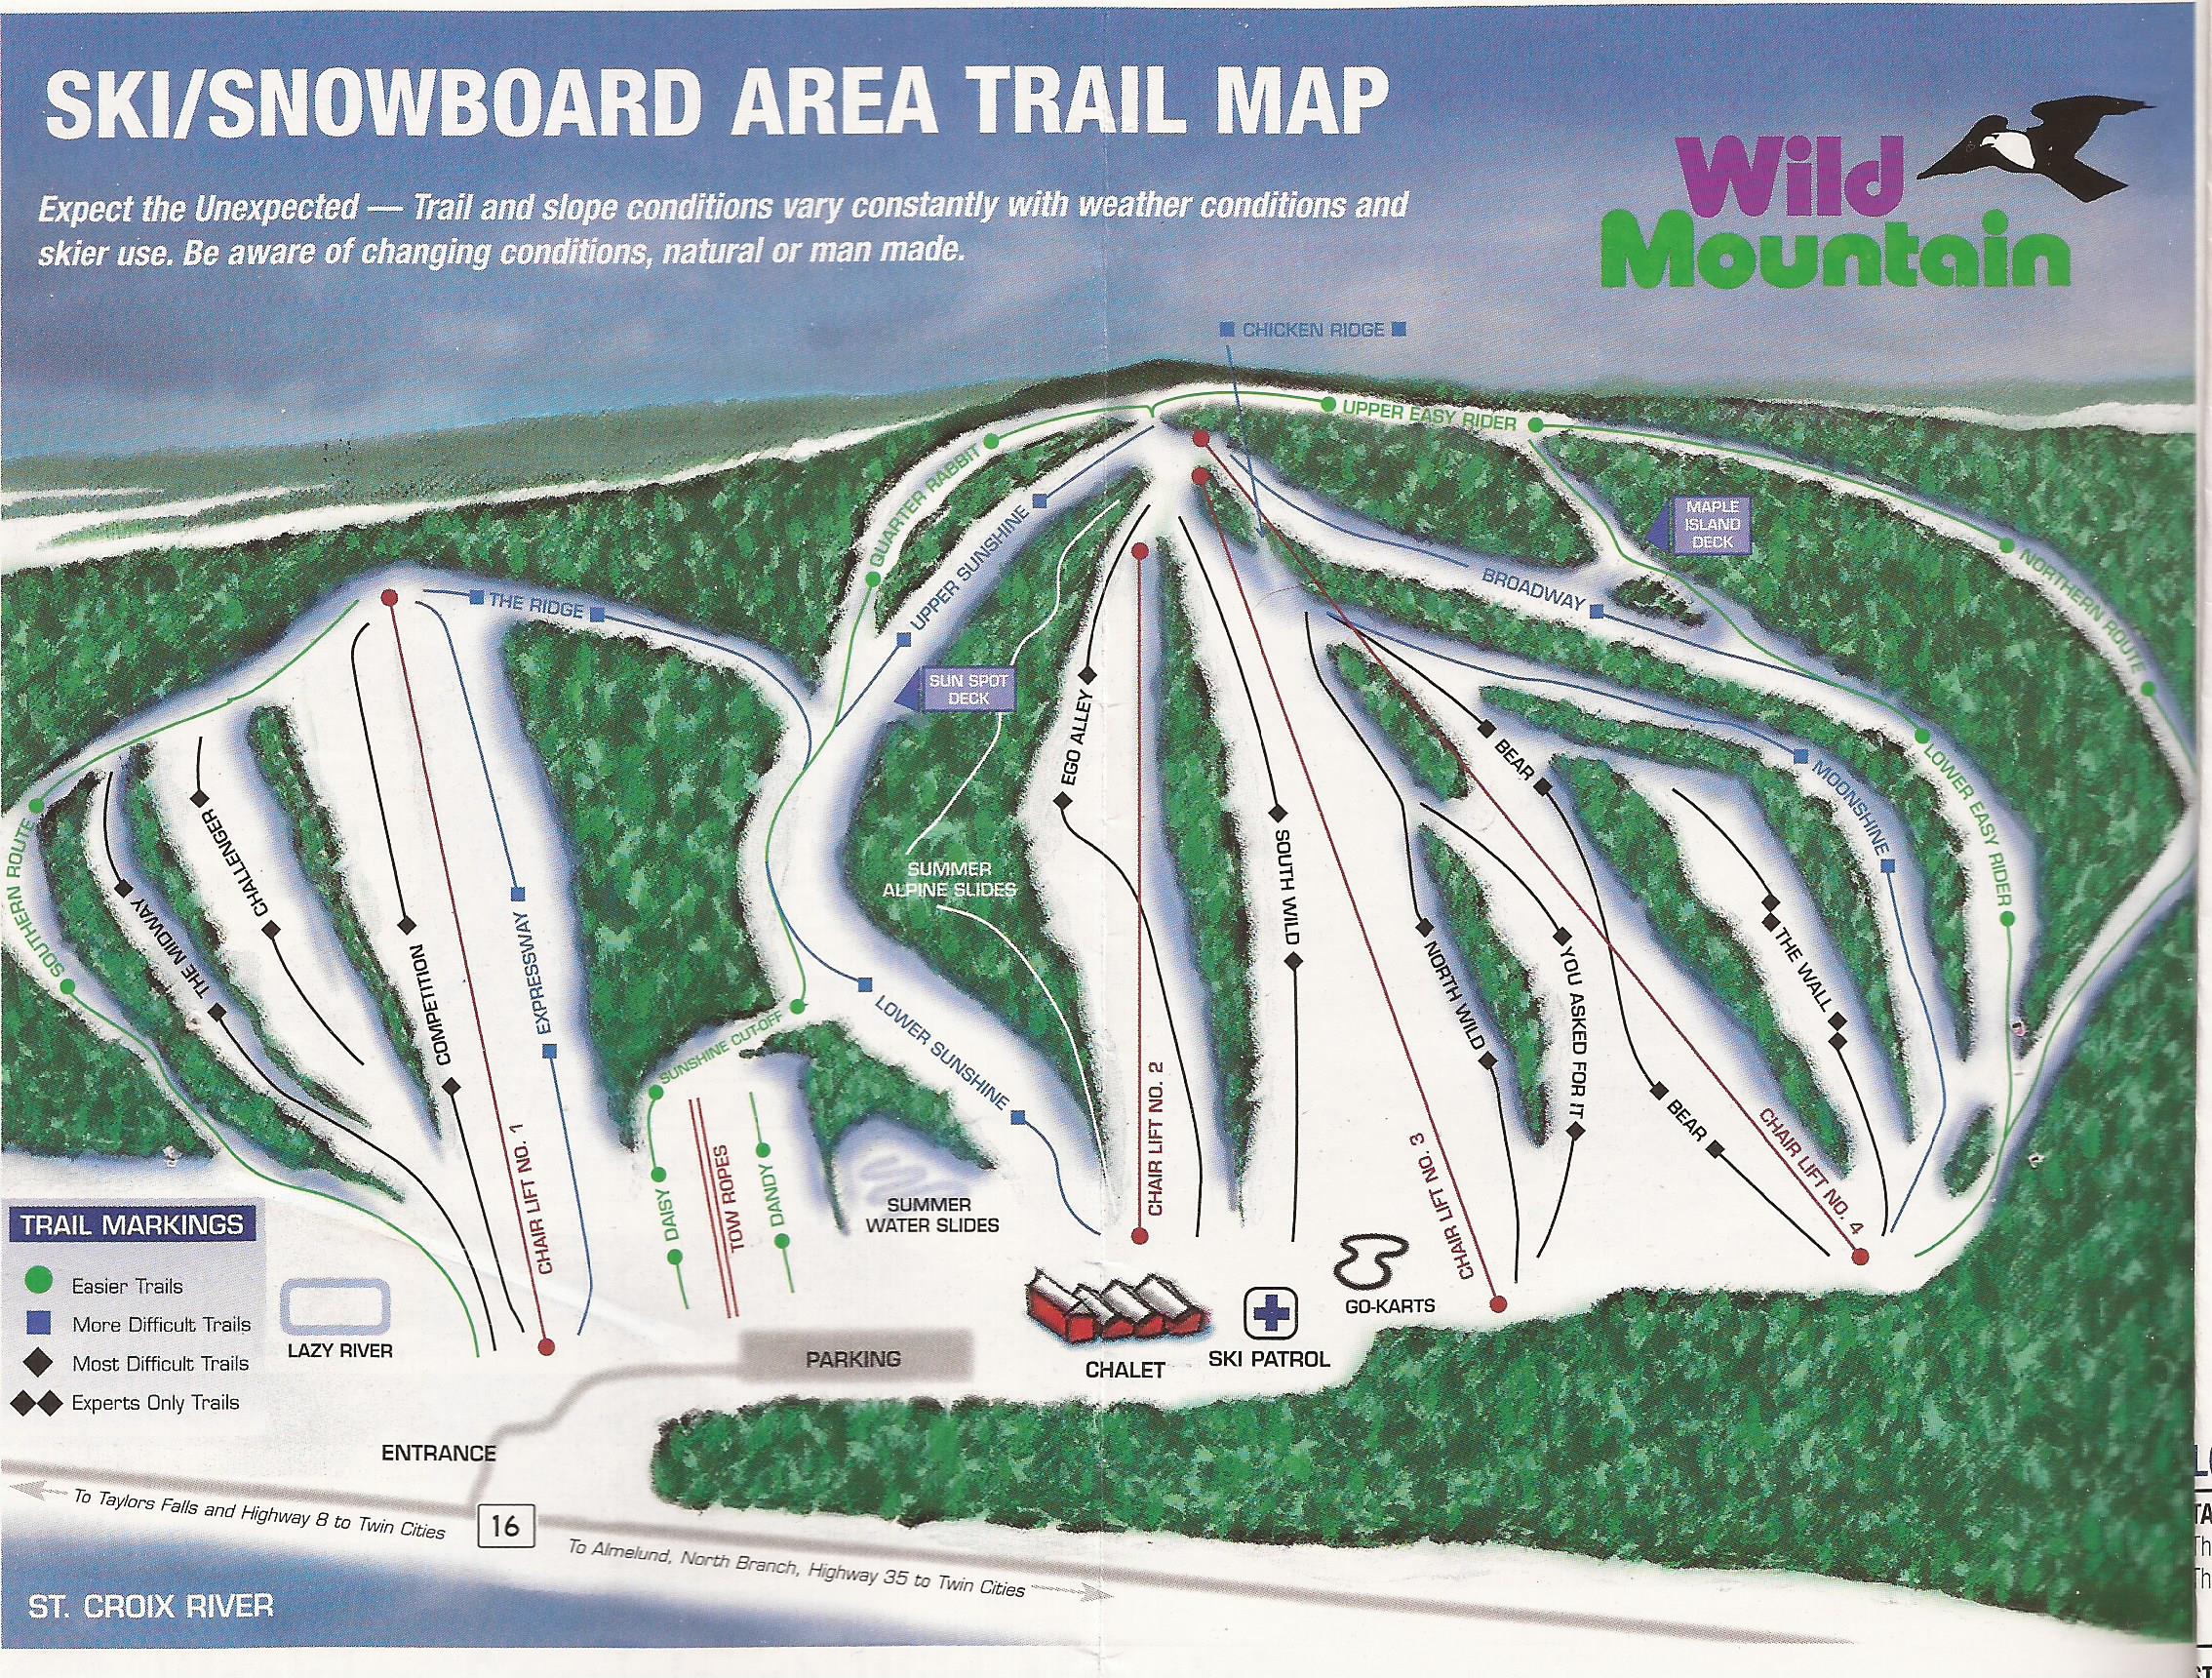 Wild Mountain Ski Area - SkiMap.org